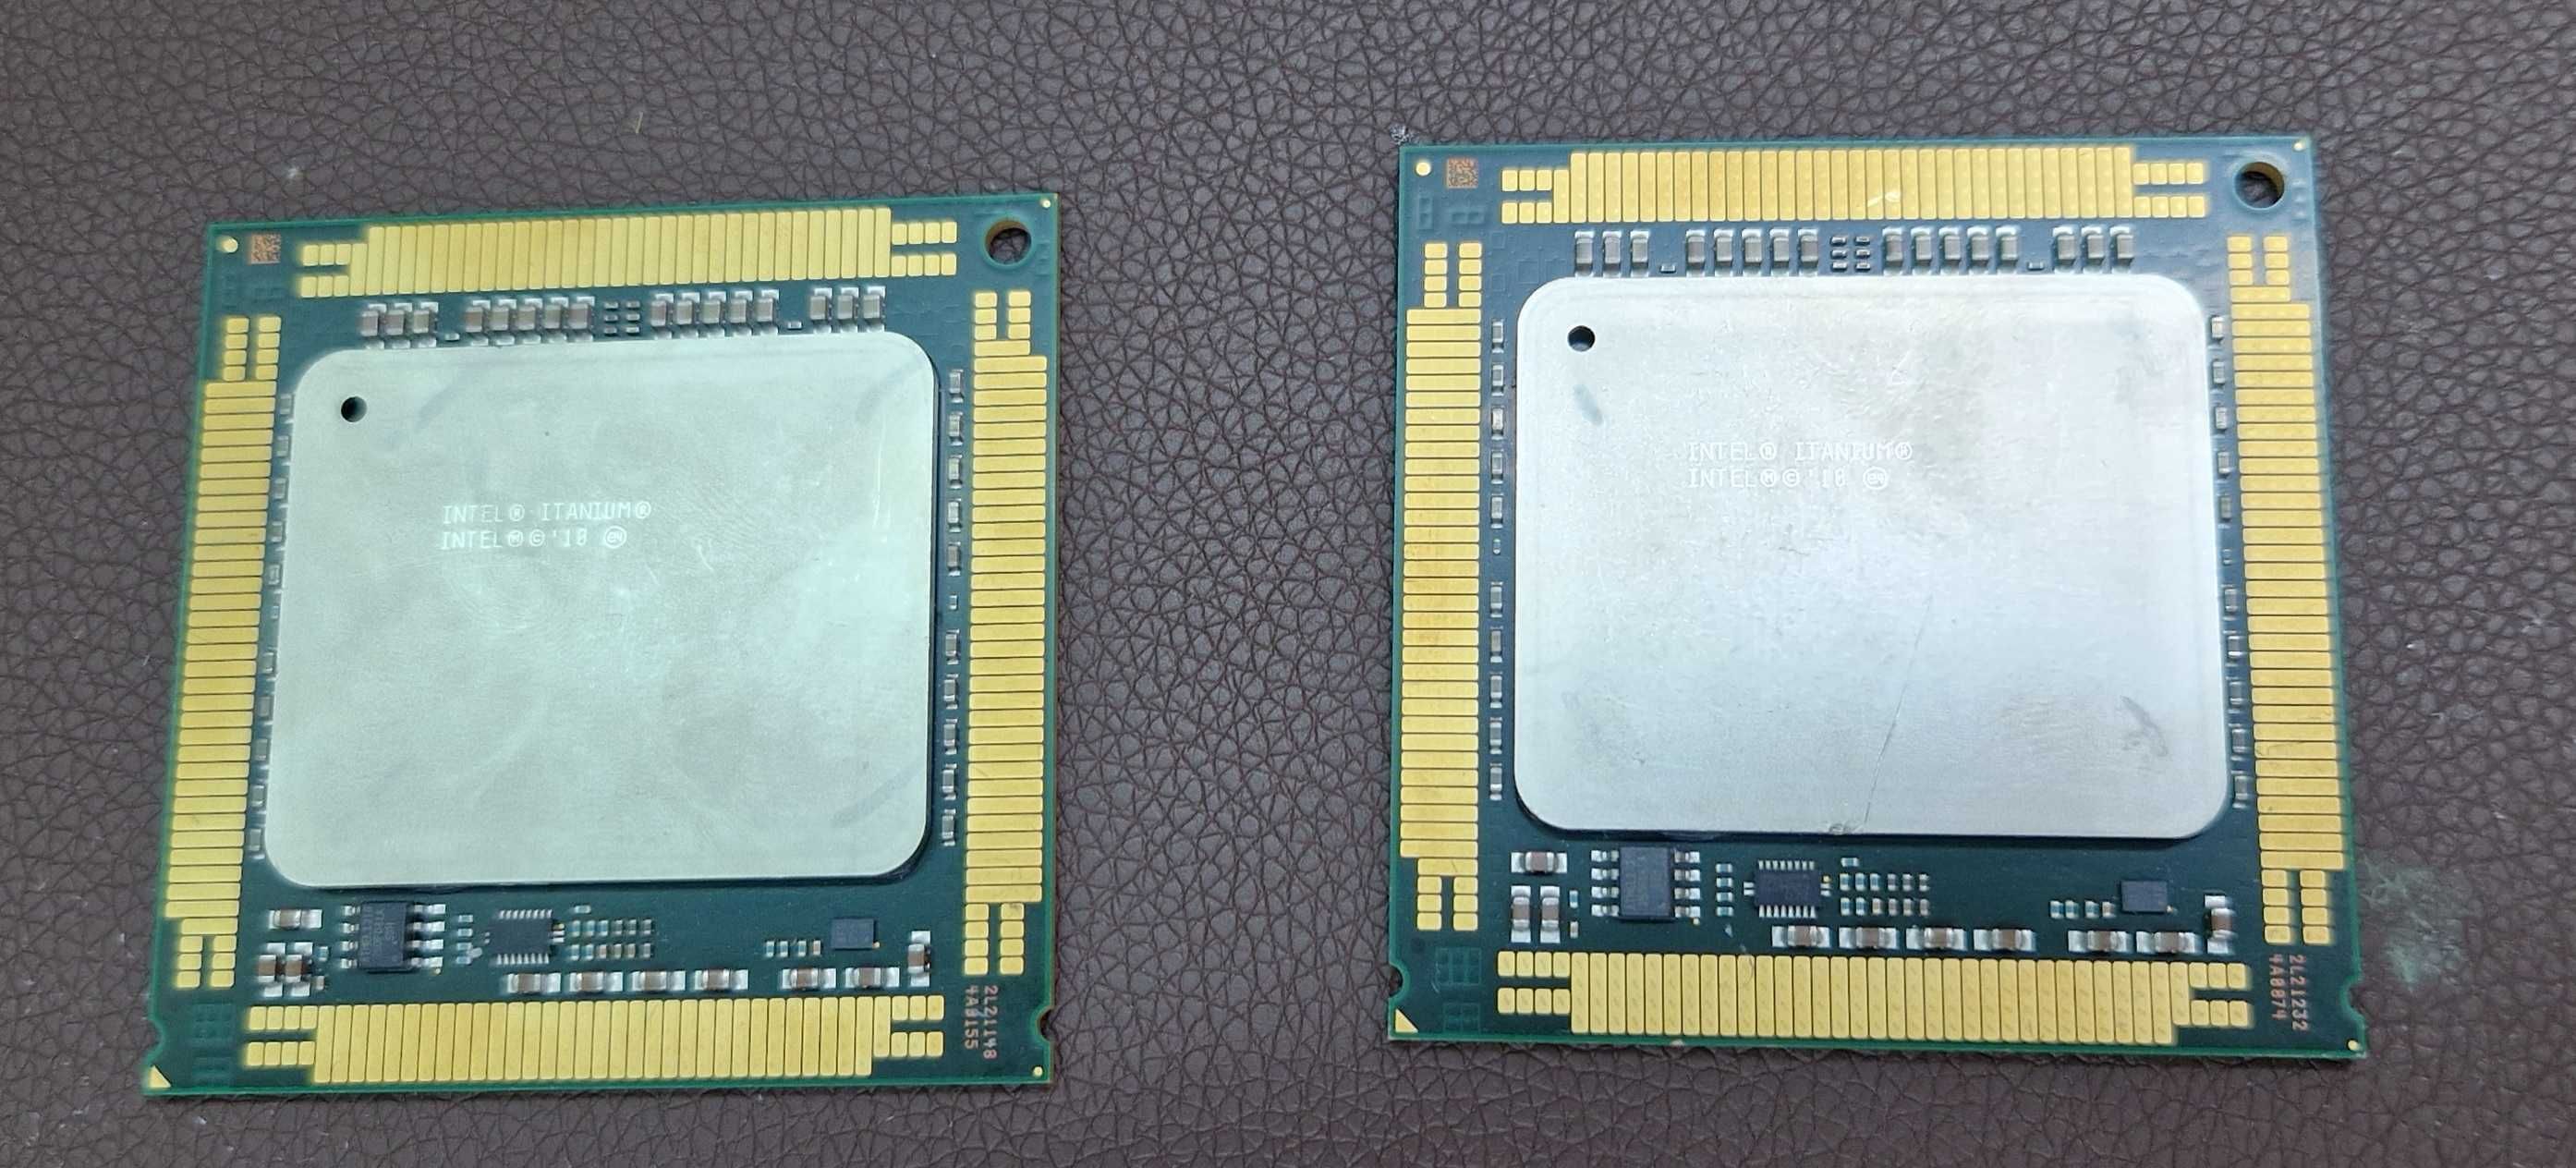 Intel Itanium 9550 Quad Core 2.40GHz Processor 32MB Cache Socket